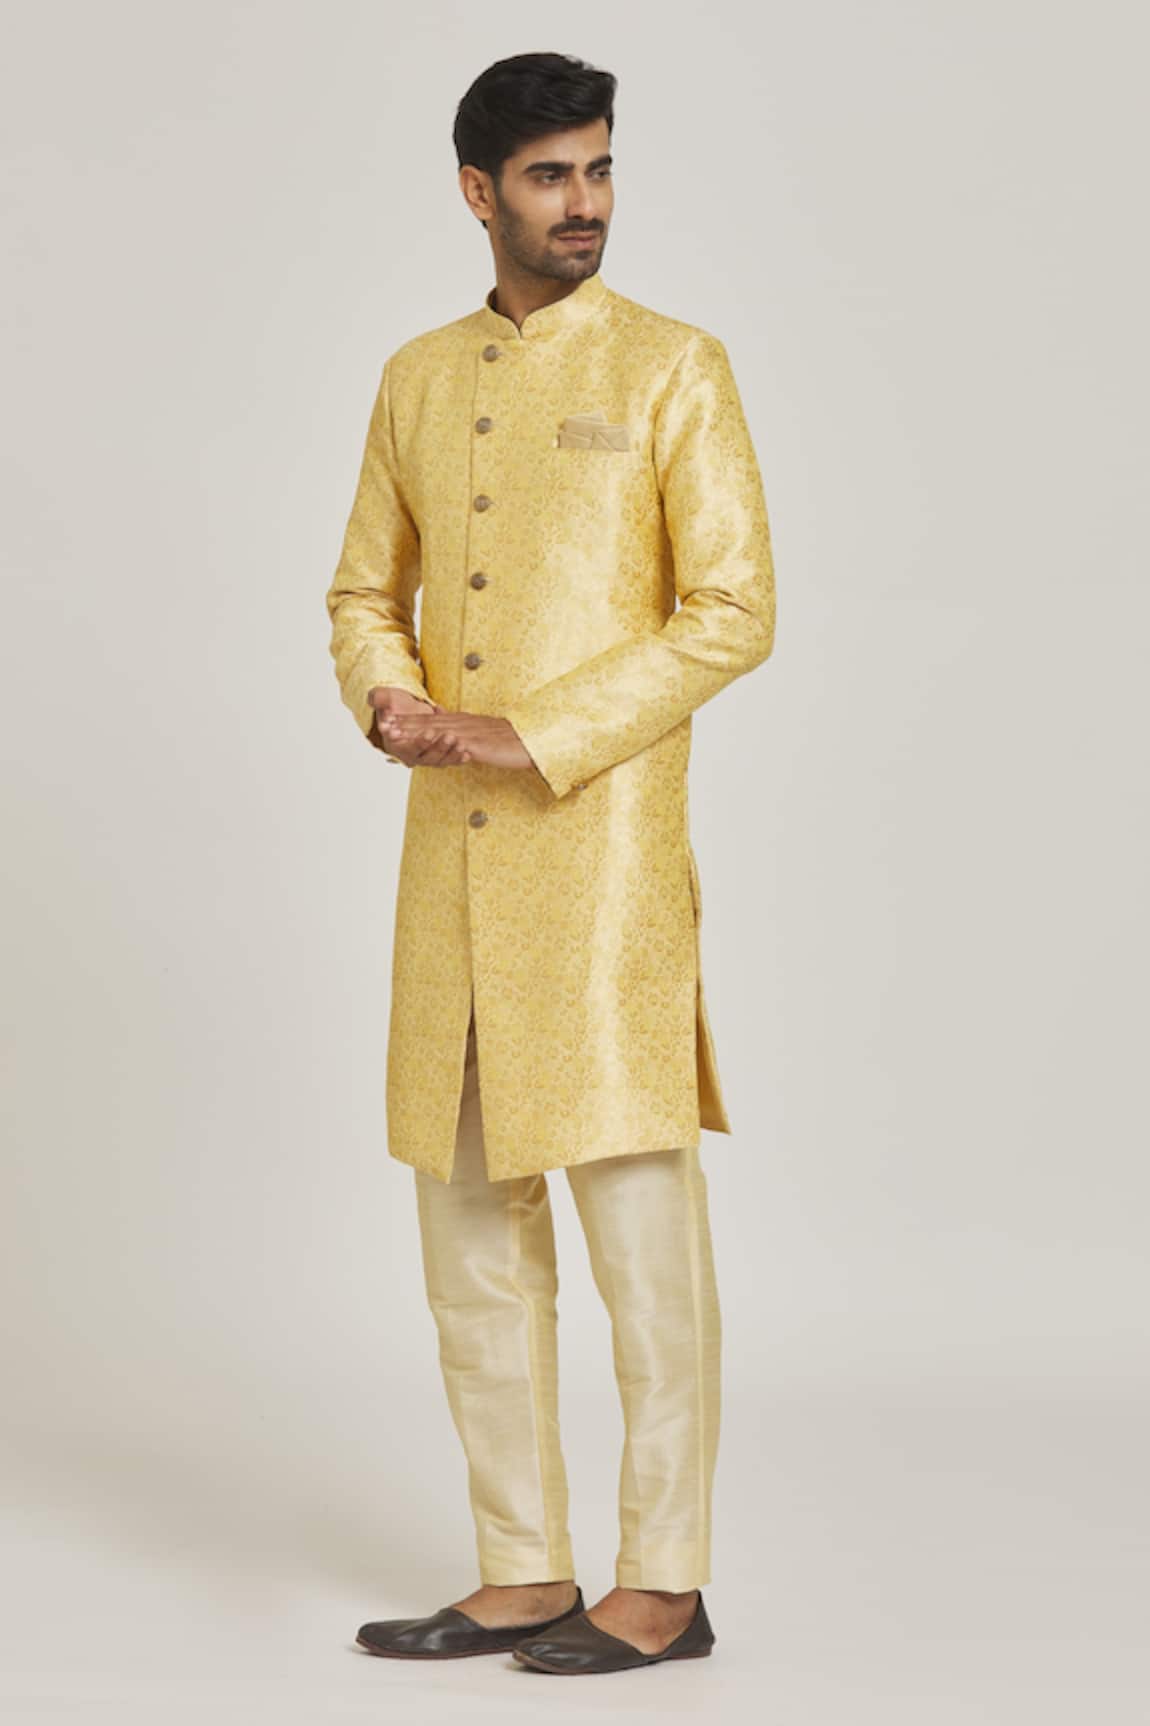 Adara Khan Floral Pattern Sherwani & Gold Pant Set